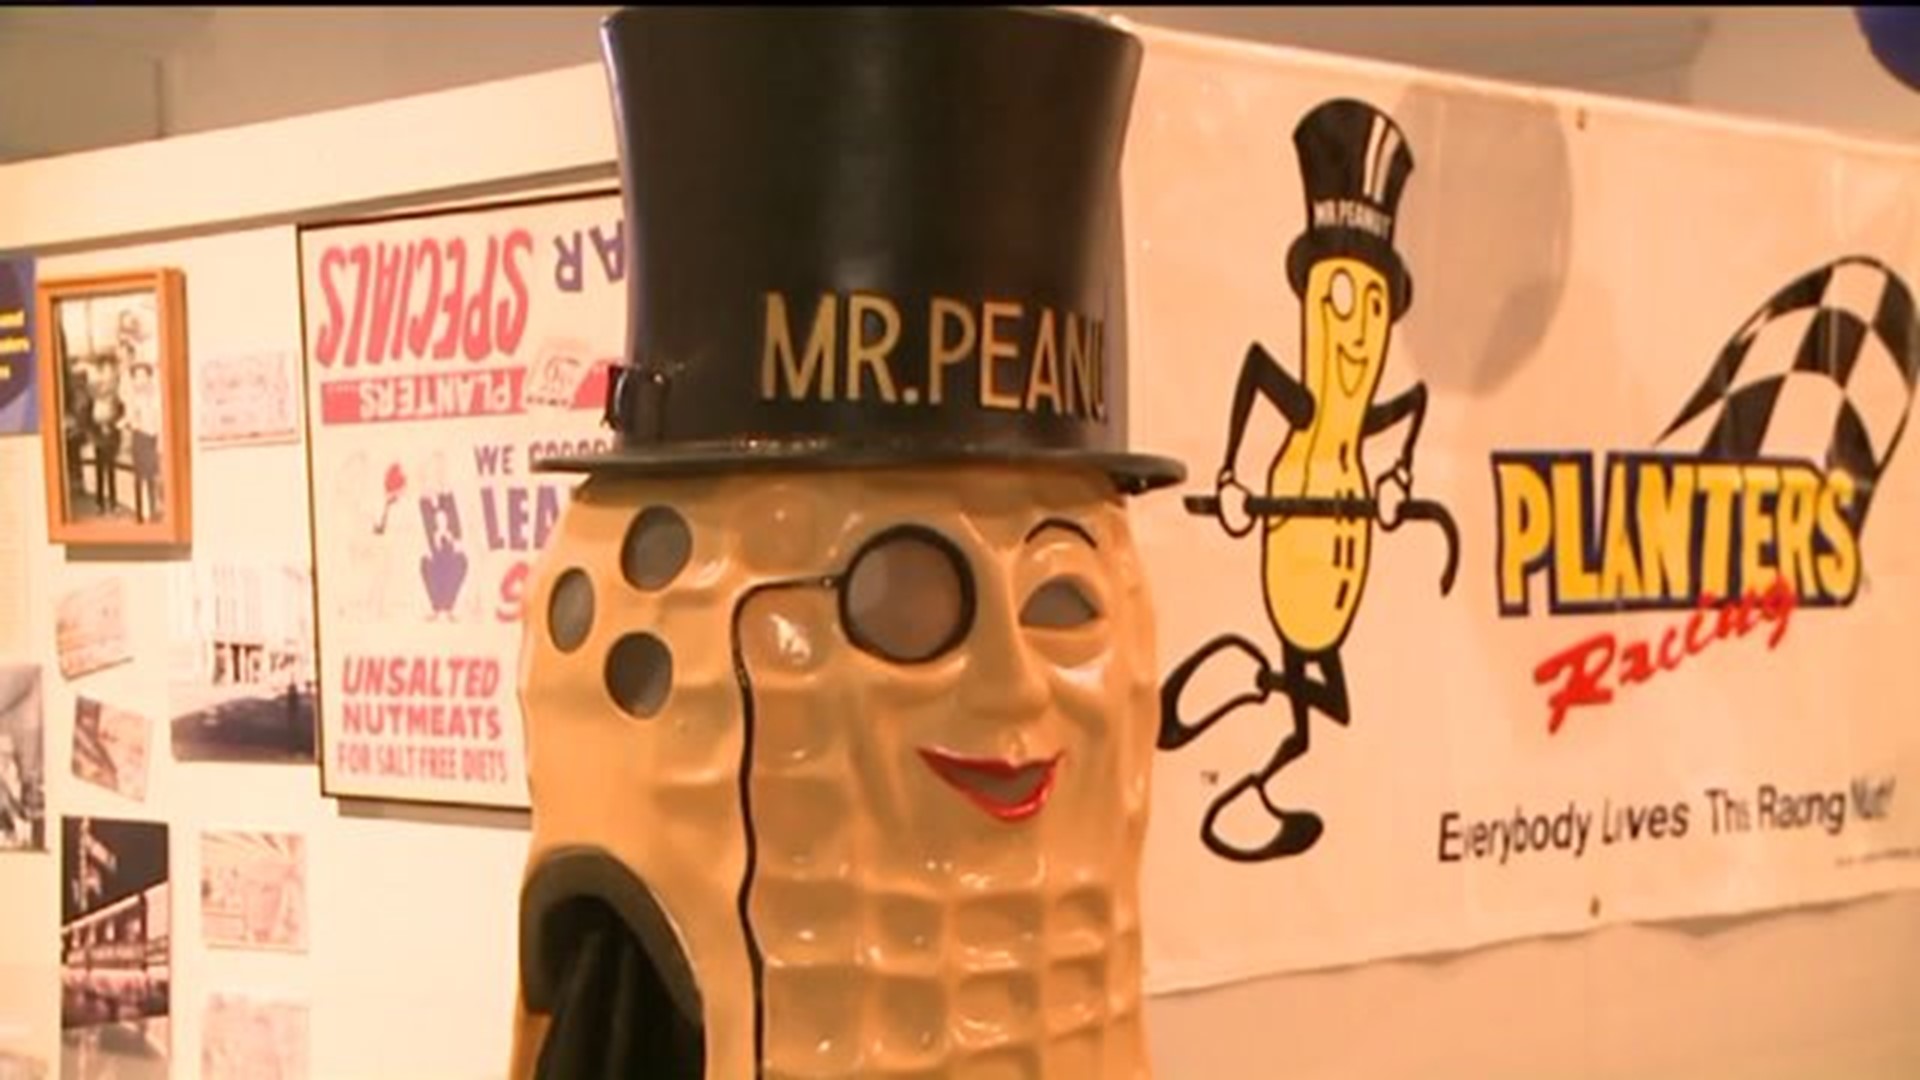 Mr. Peanut Back in Wilkes-Barre